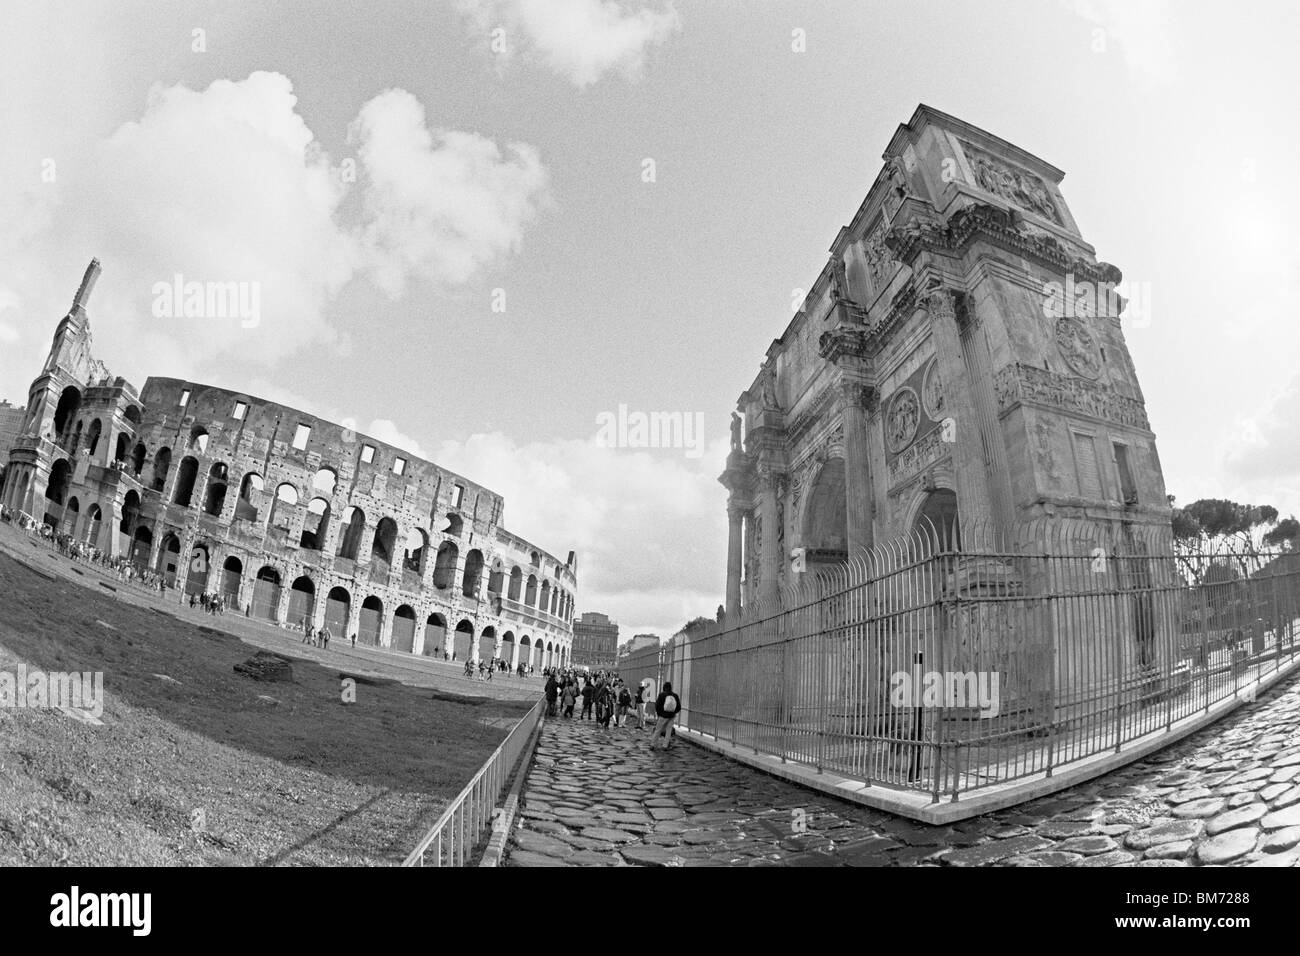 Rome, Italie, 30 janvier 2010 -- Arc de Constantin (à droite) et le Colisée (à gauche). Banque D'Images